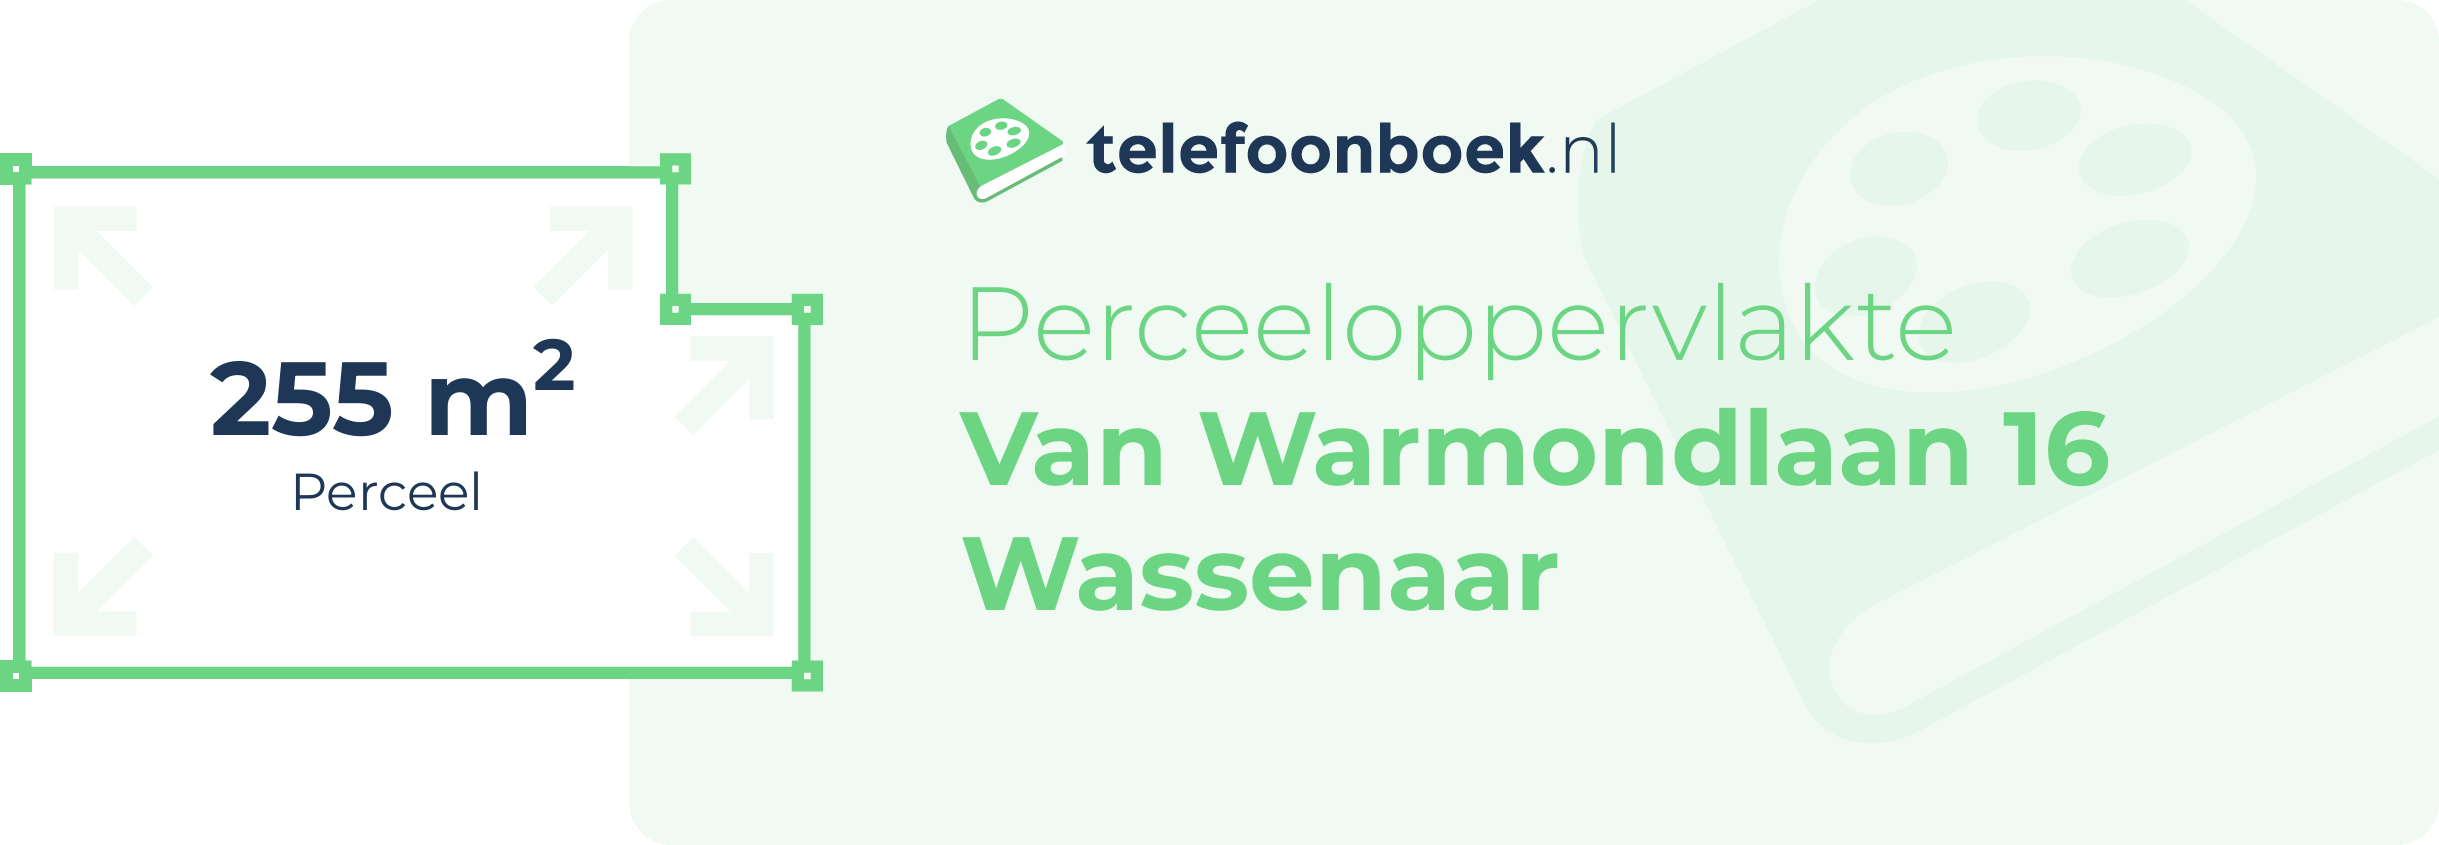 Perceeloppervlakte Van Warmondlaan 16 Wassenaar